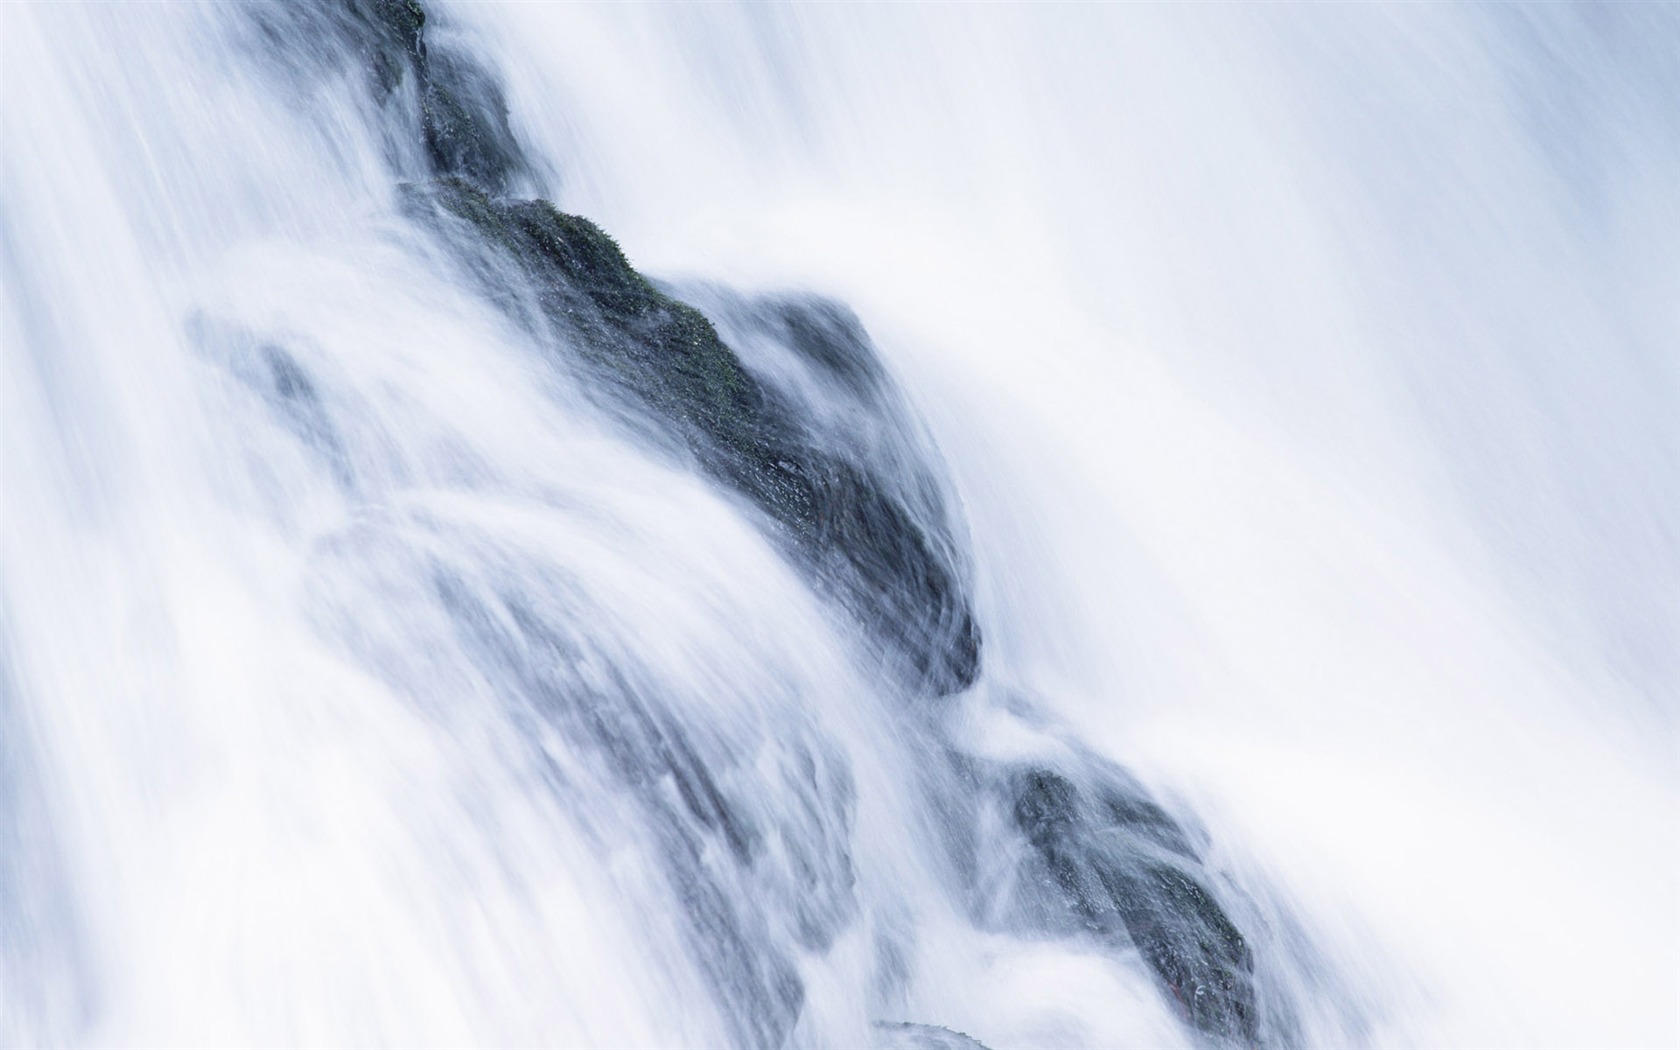 Waterfall flux HD Wallpapers #32 - 1680x1050